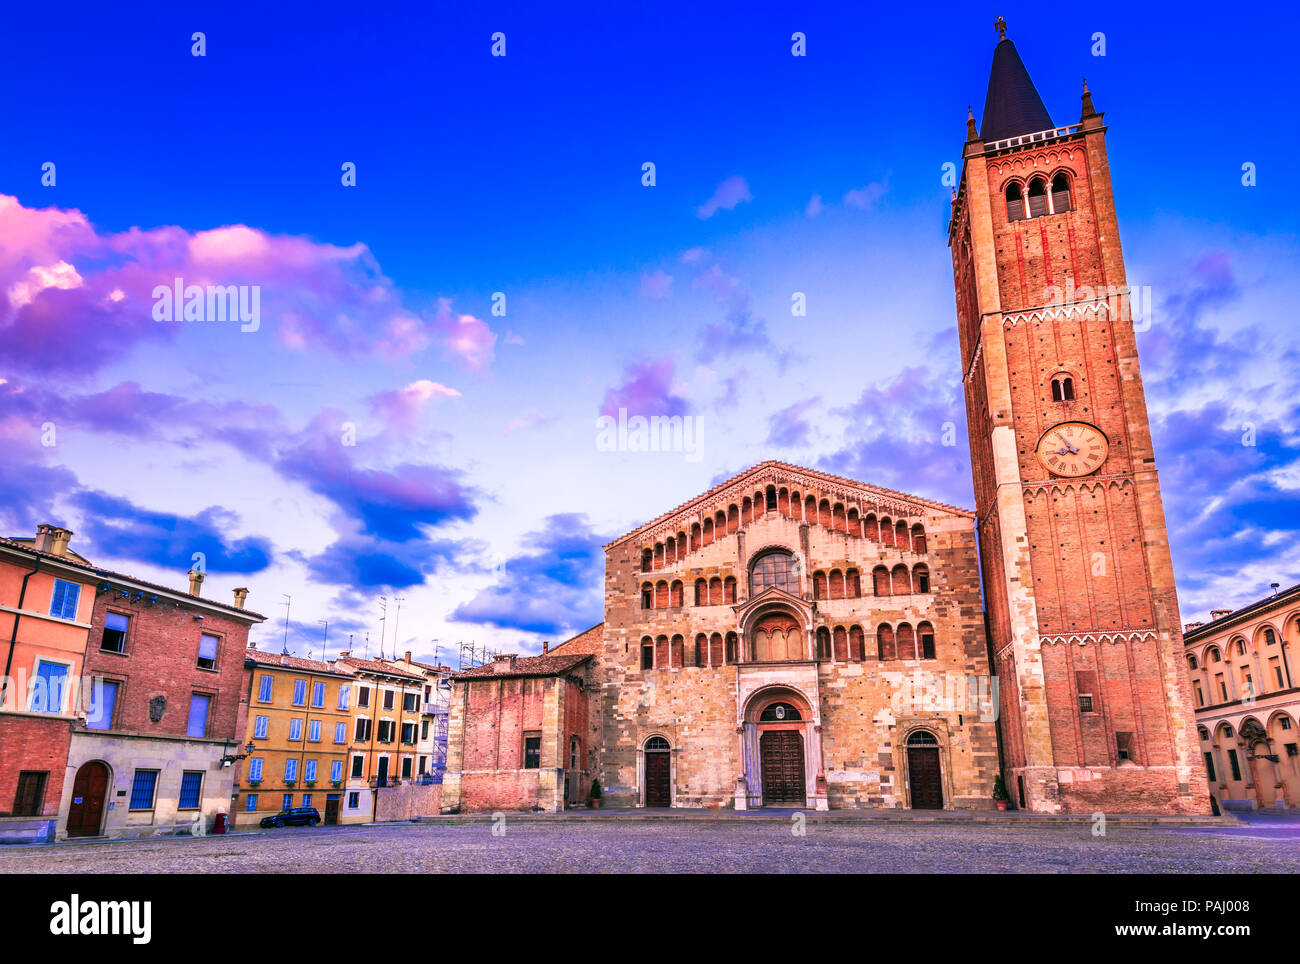 Parma, Italy - Piazza del Duomo, Romanesque architecture in Emilia-Romagna. Stock Photo